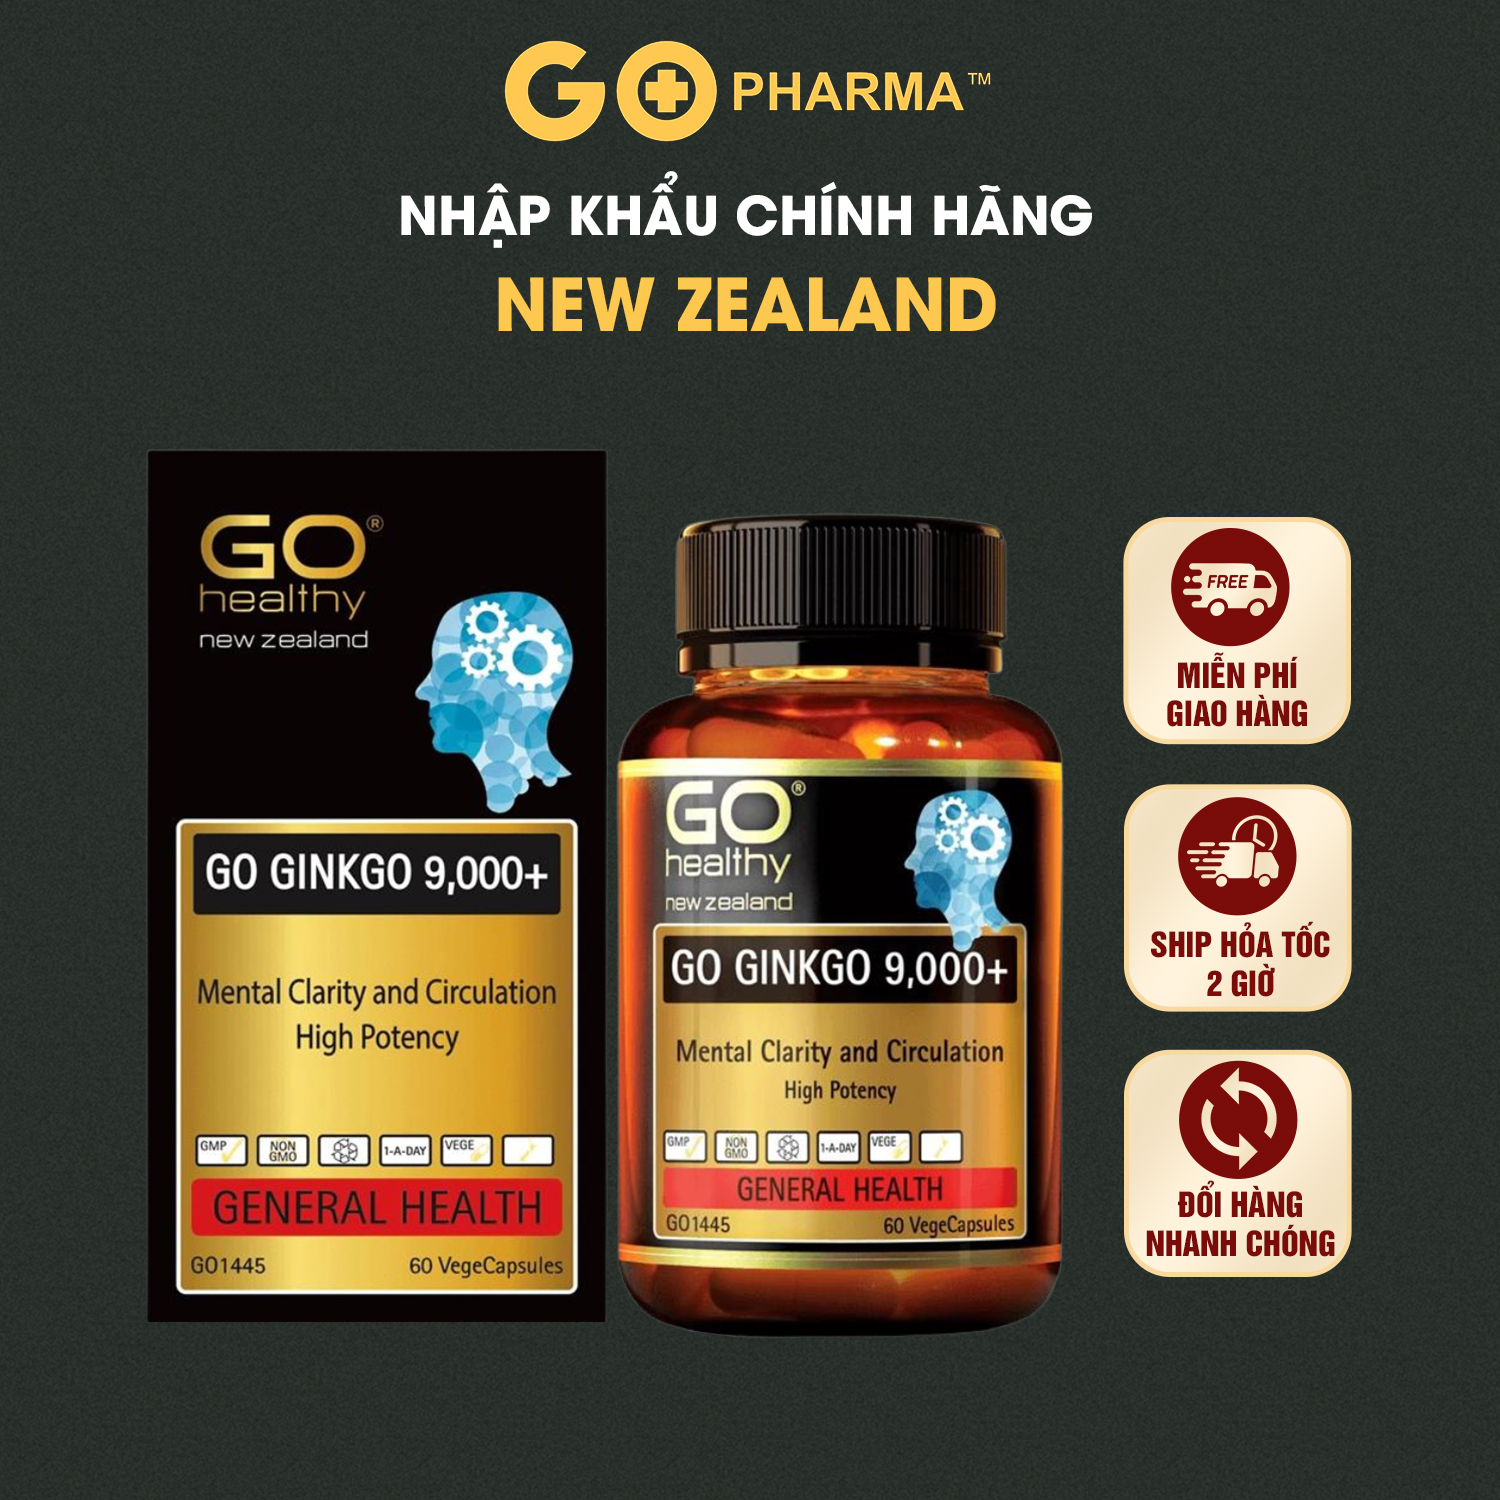 Viên Uống Bổ Não New Zealand GO Ginkgo 9000+ GO Healthy